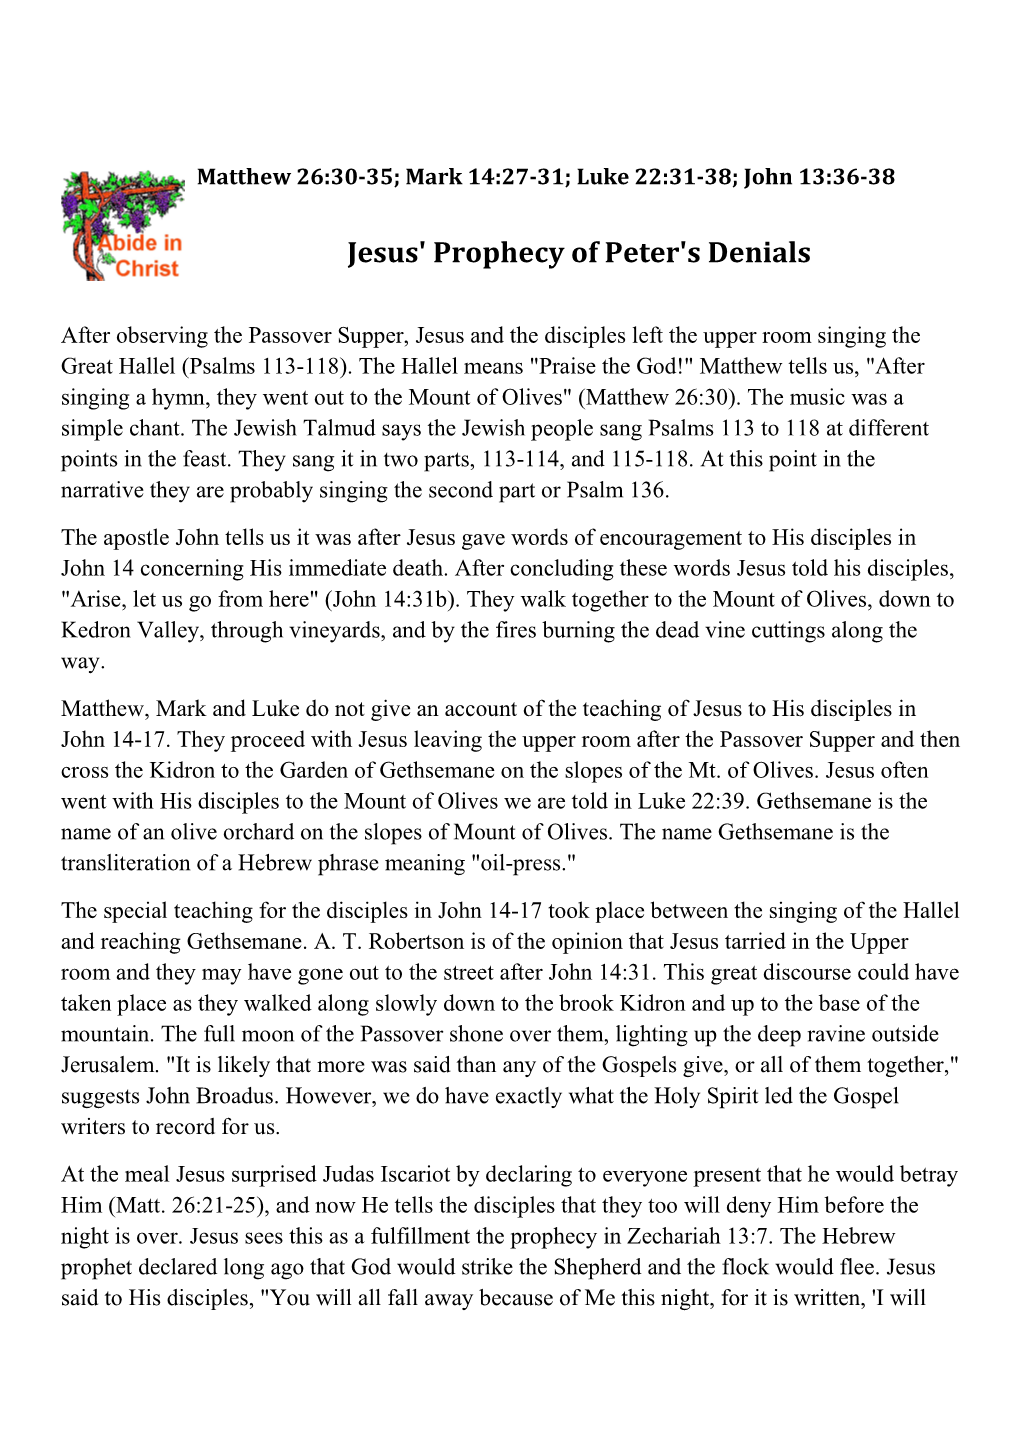 69-75 Jesus Prophecy of Peters' Denials